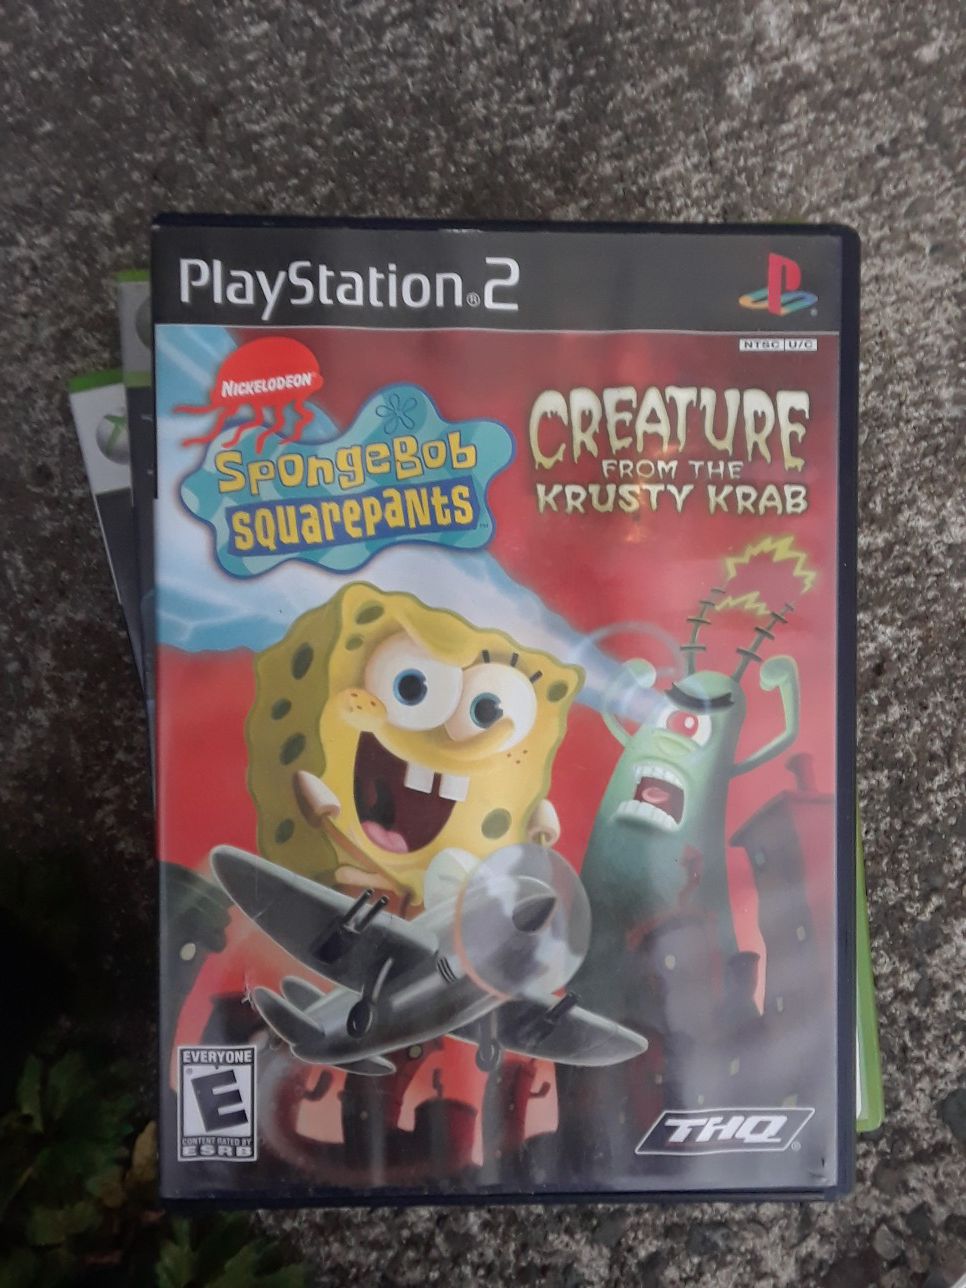 PS2 SpongeBob SquarePants video game